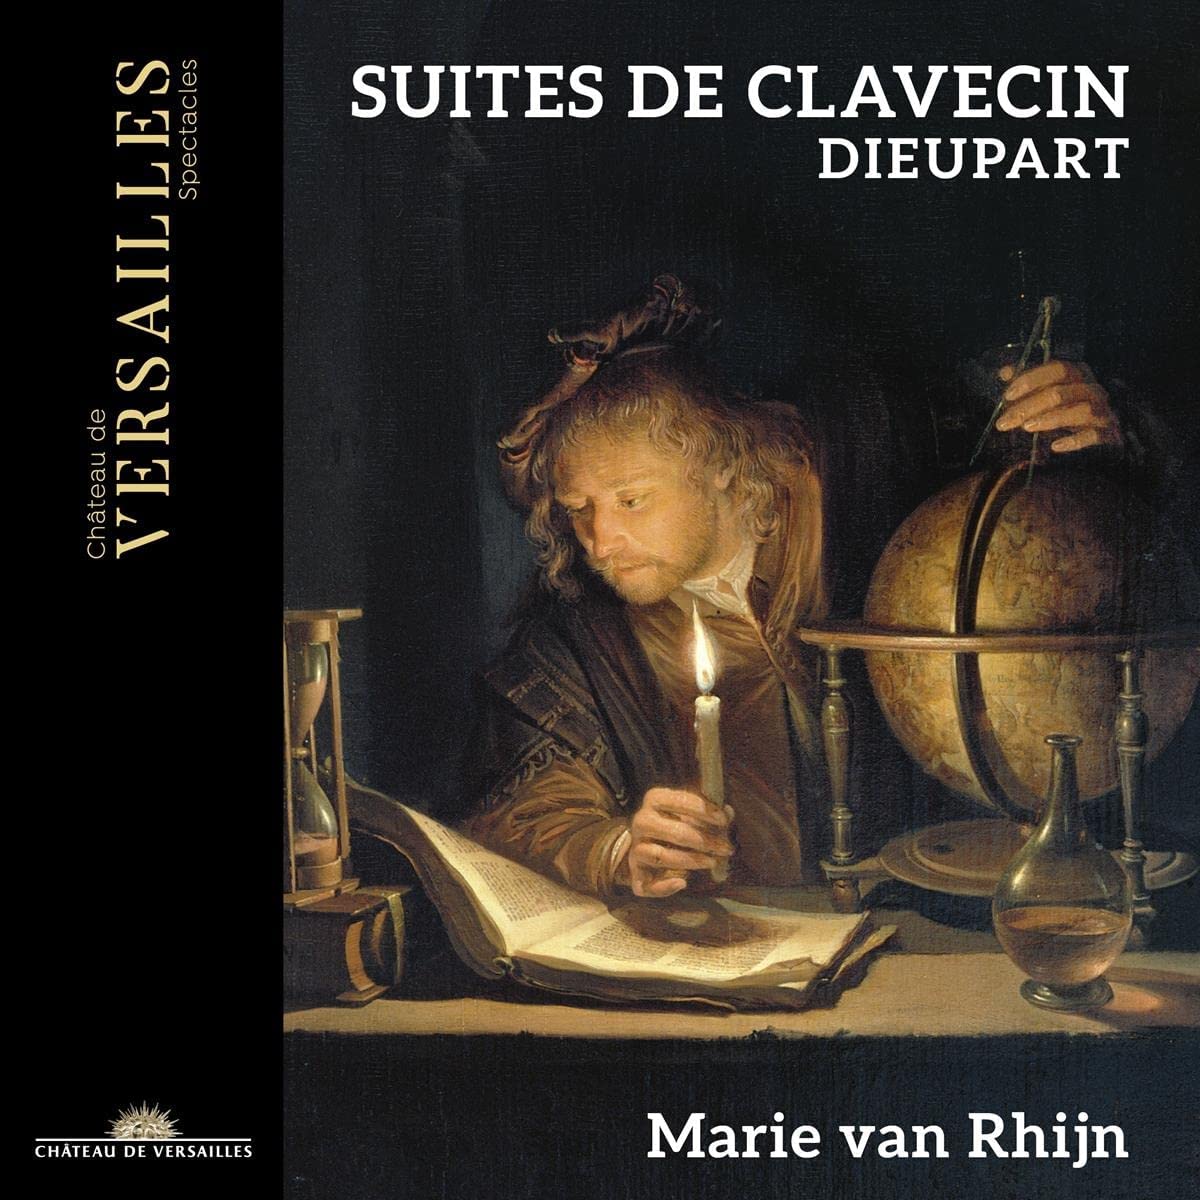 CD cover Dieupart Suites de Clavecin